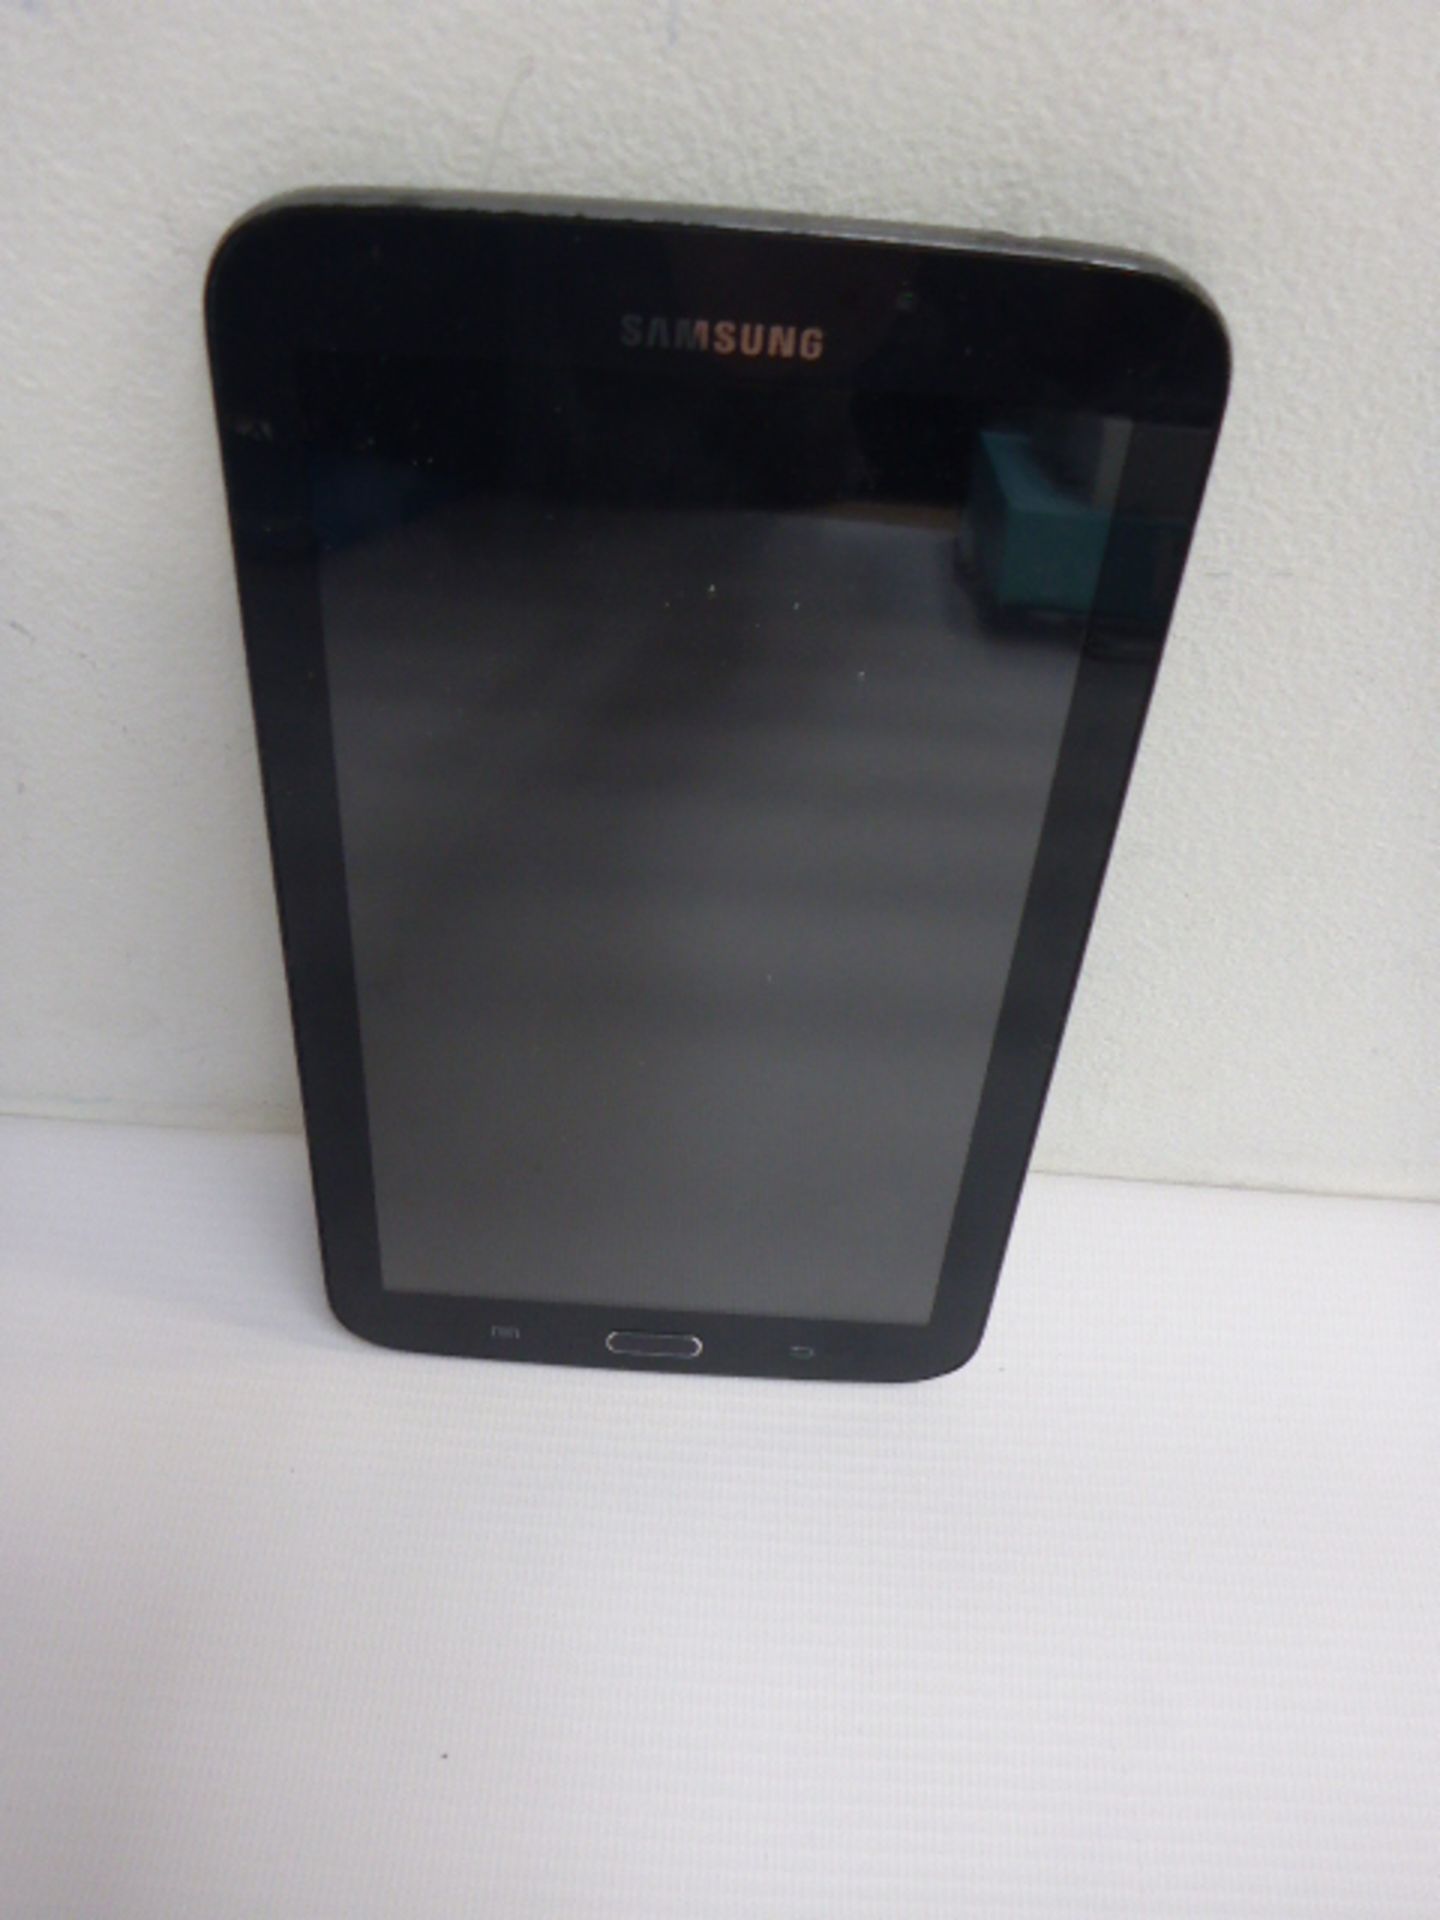 Samsung Galaxy tab 3 Model SM-T210, 8gb Storage.